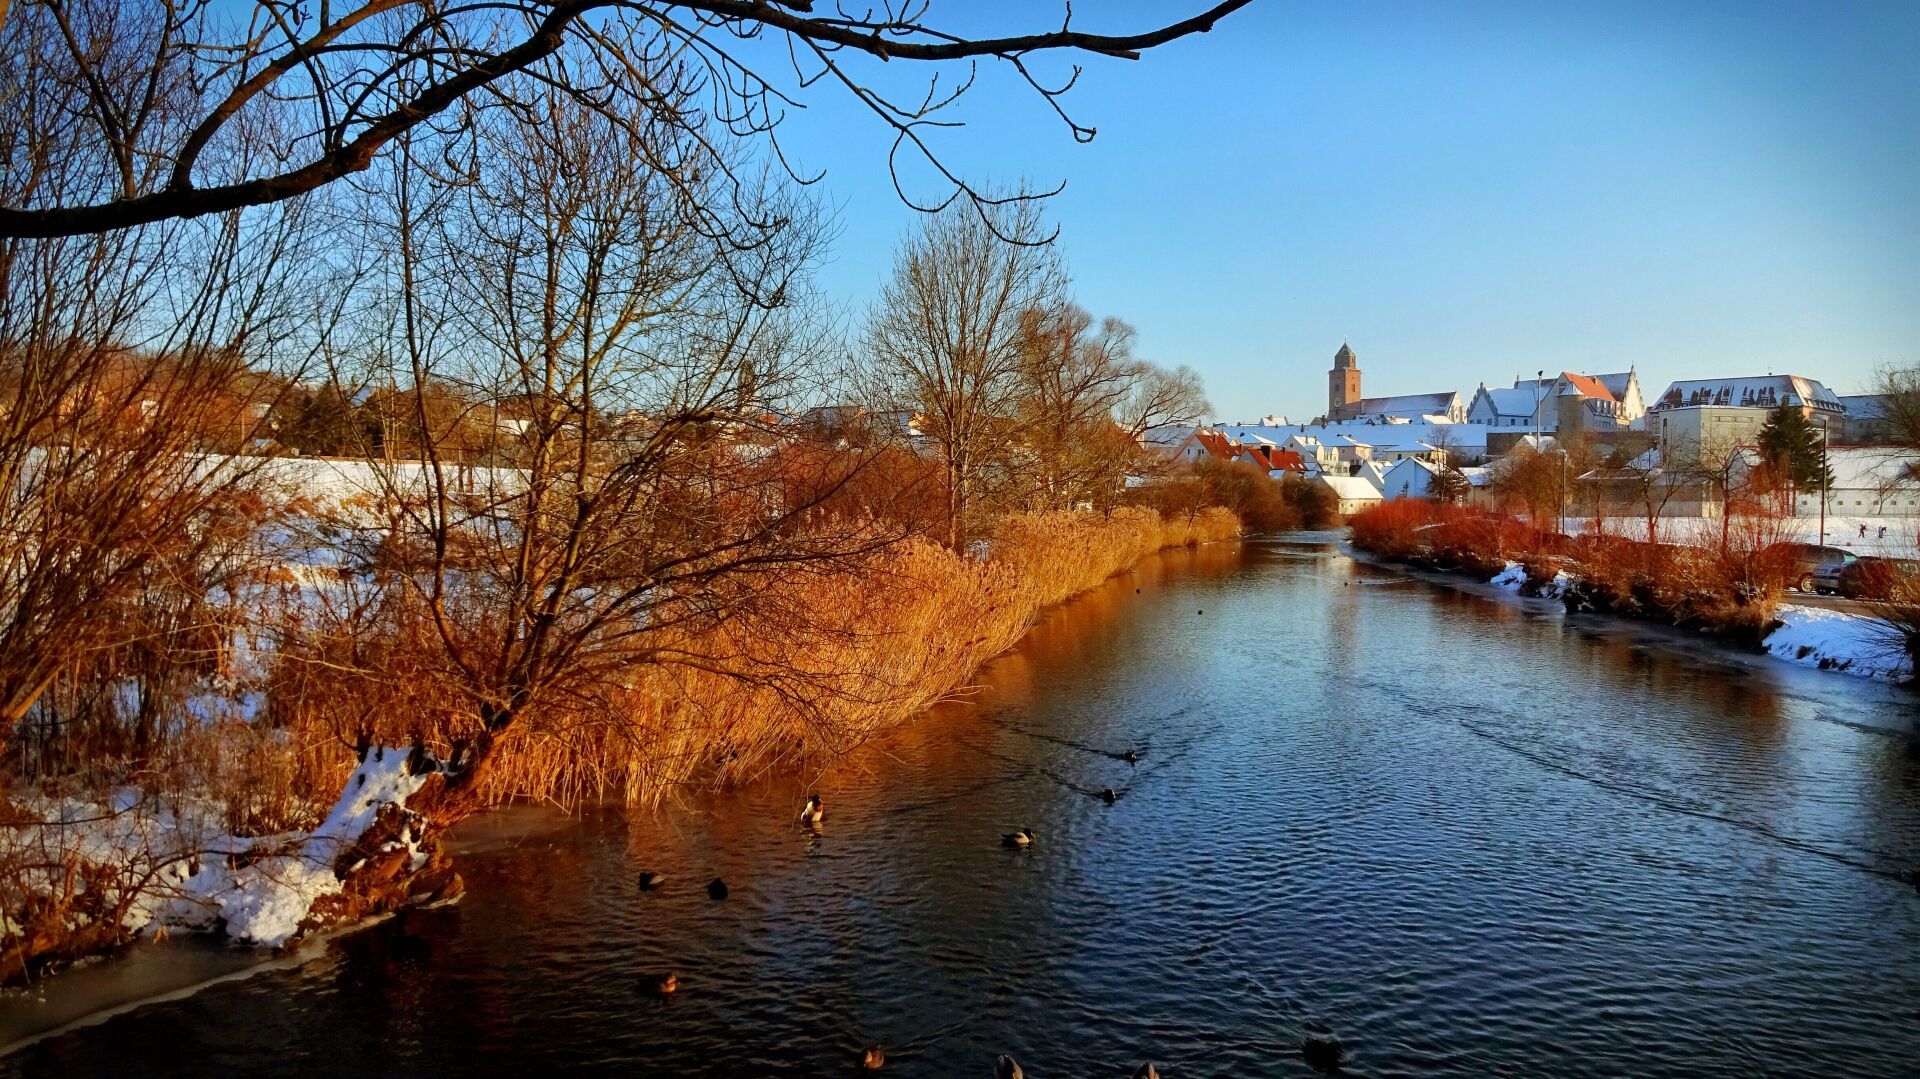 Die Wörnitz bei Donauwörth im #Winter

Woernitz river near Donauwoerth